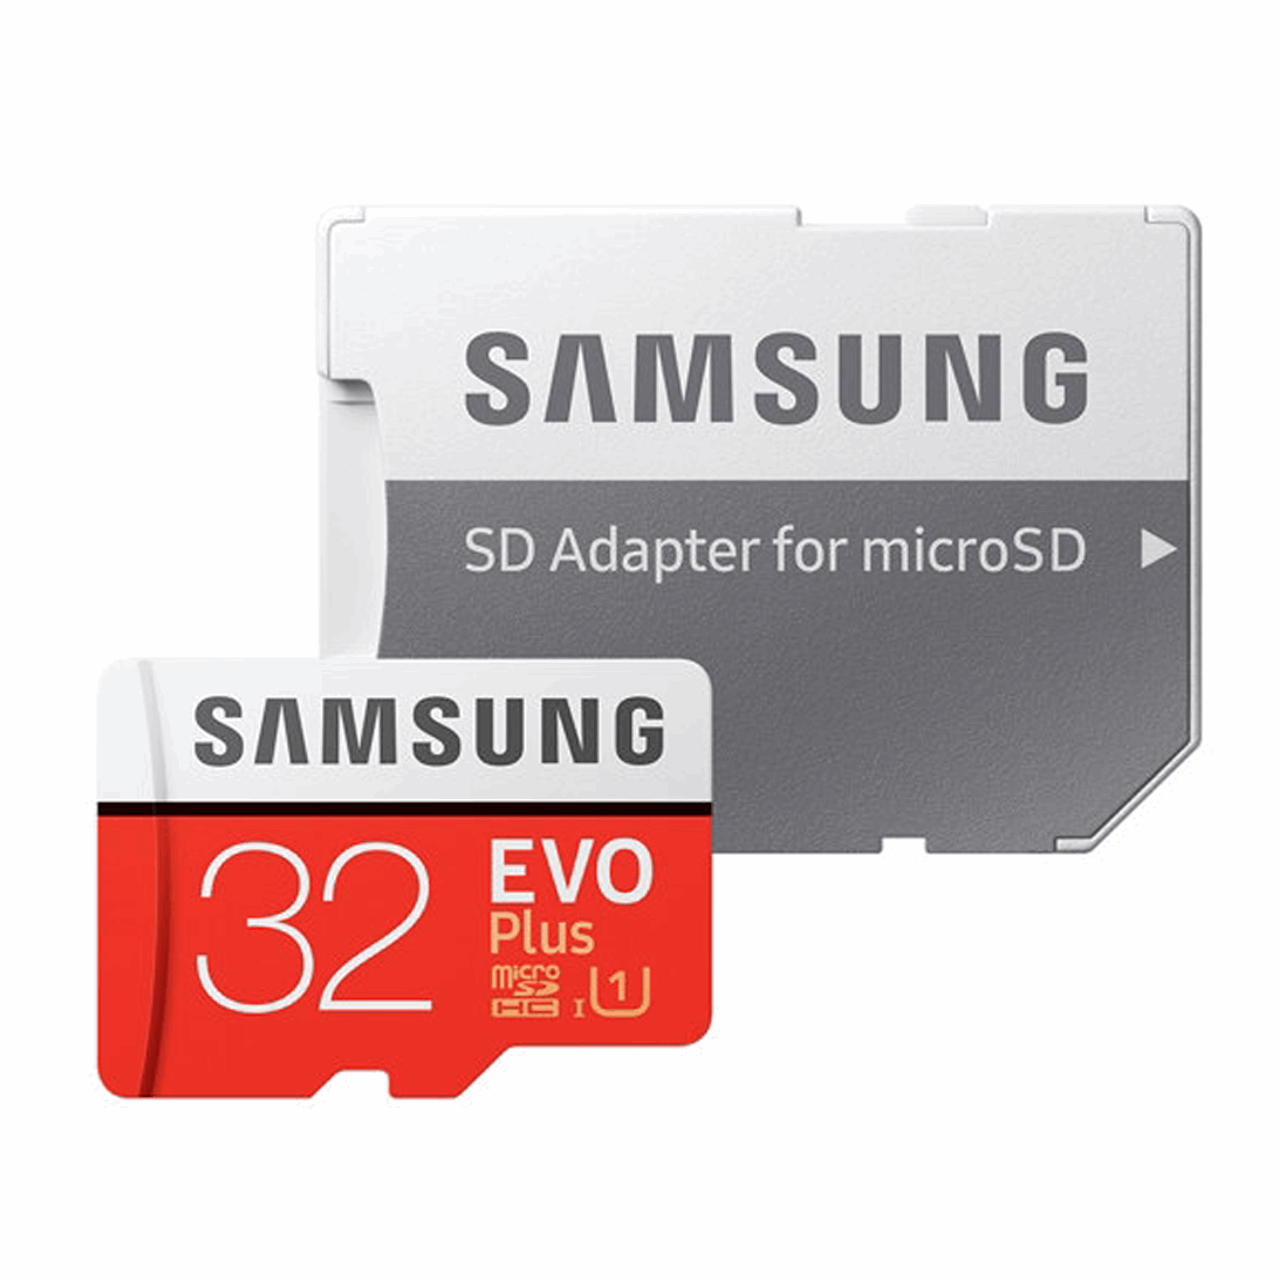 کارت حافظه microSDHC  مدل Evo Plus کلاس 10 استاندارد UHS-I U1 سرعت 80MBps همراه با آداپتور SD ظرفیت 32 گیگابایت